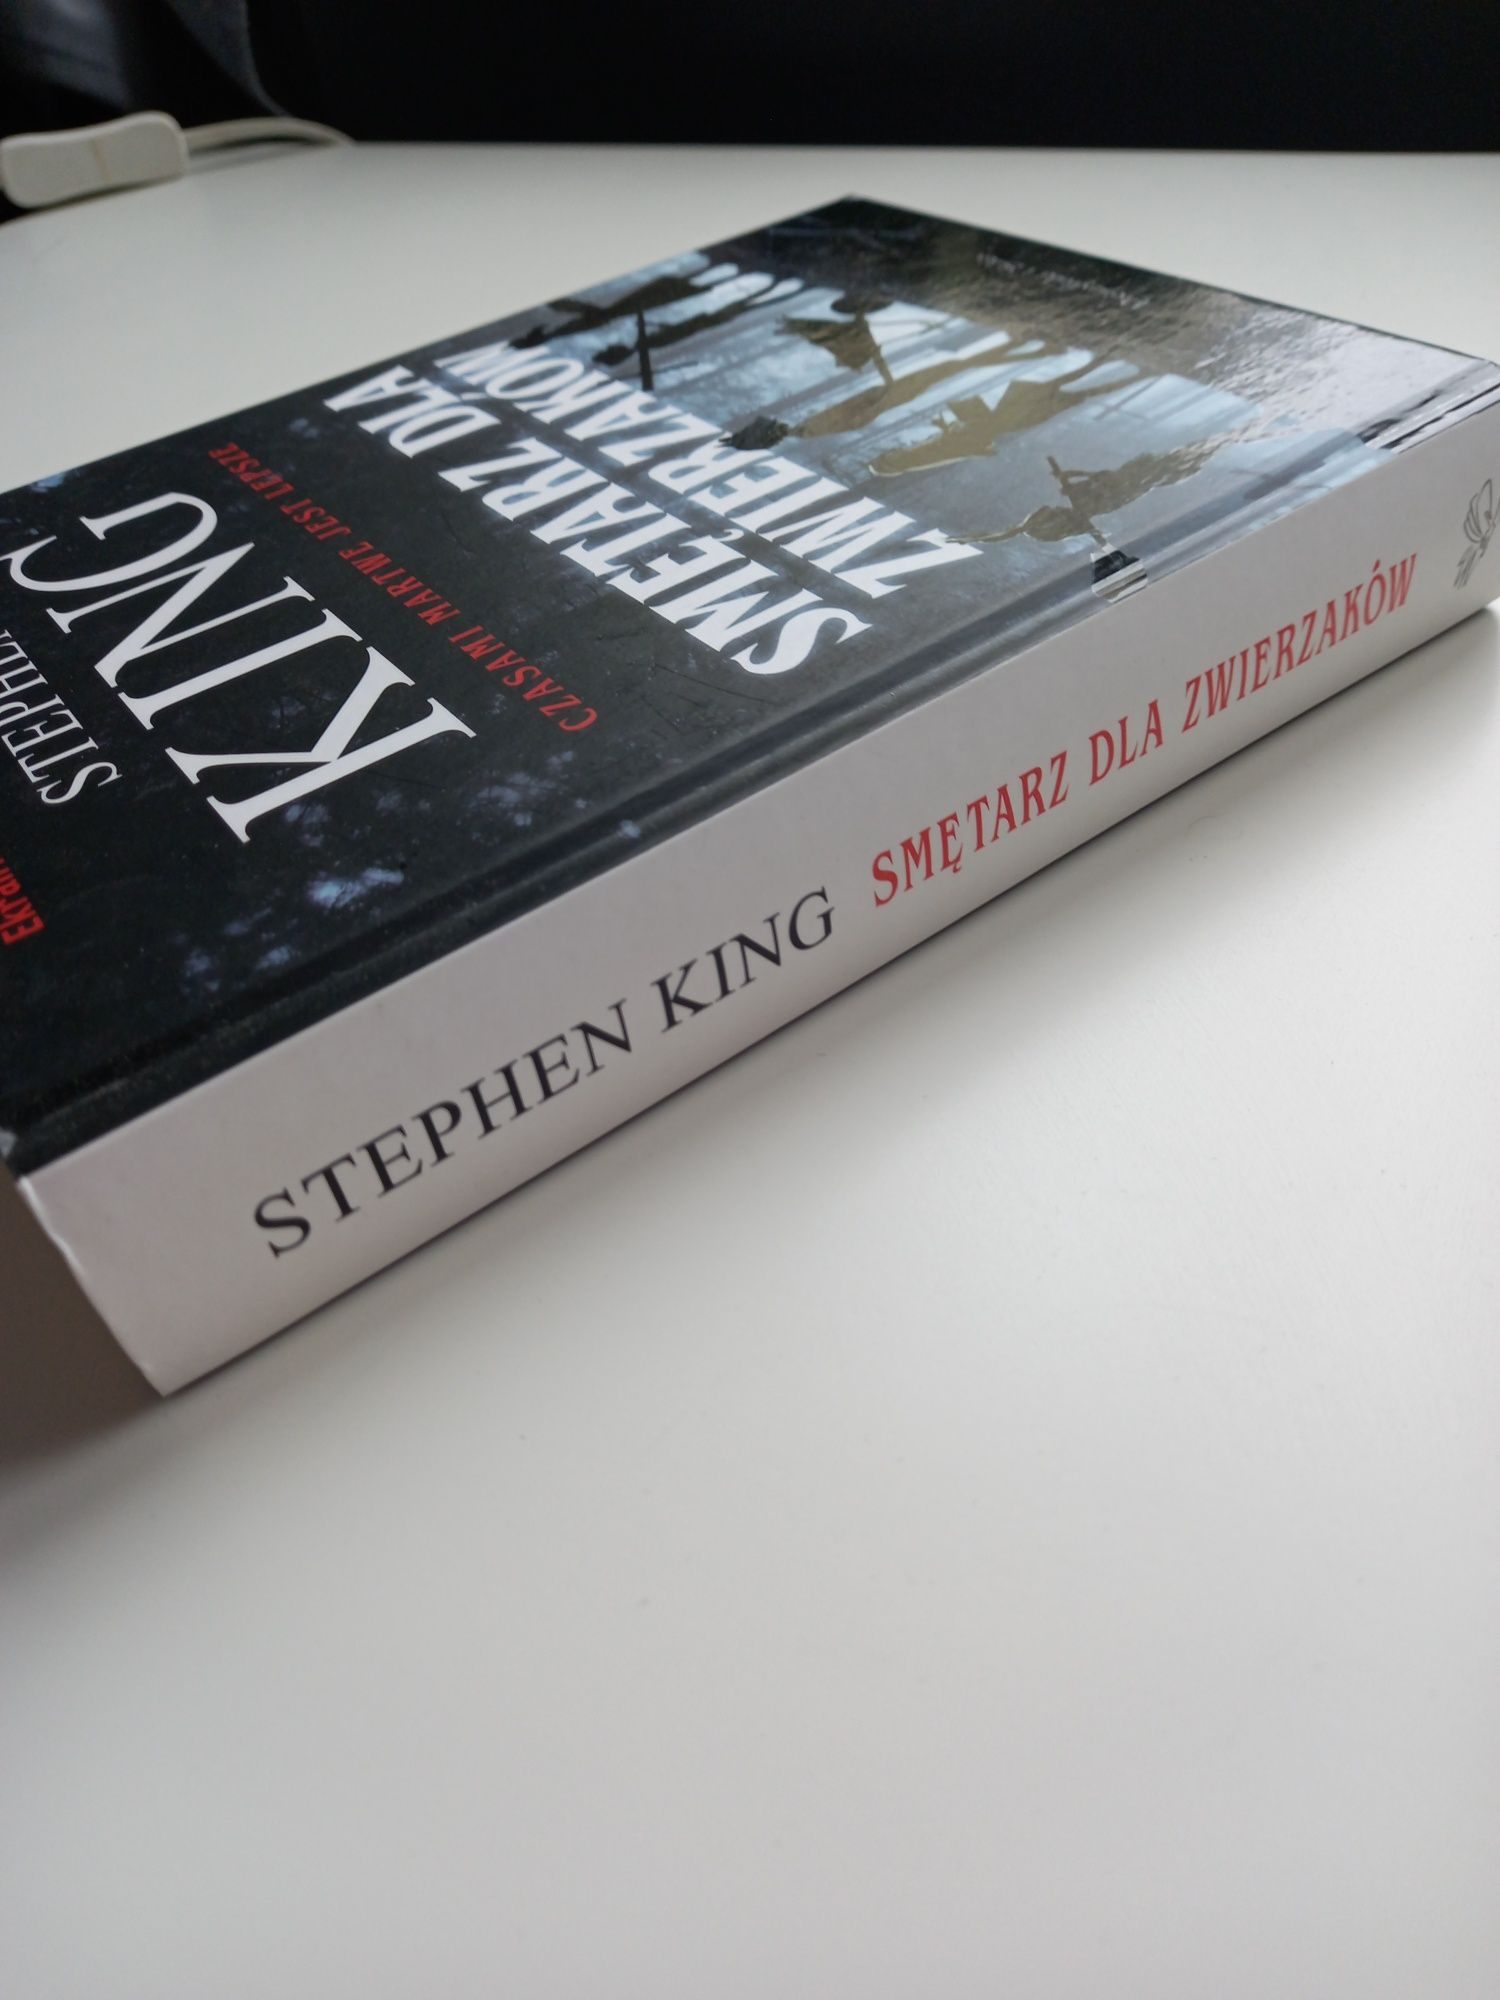 Smętarz dla zwierząt Stephen King